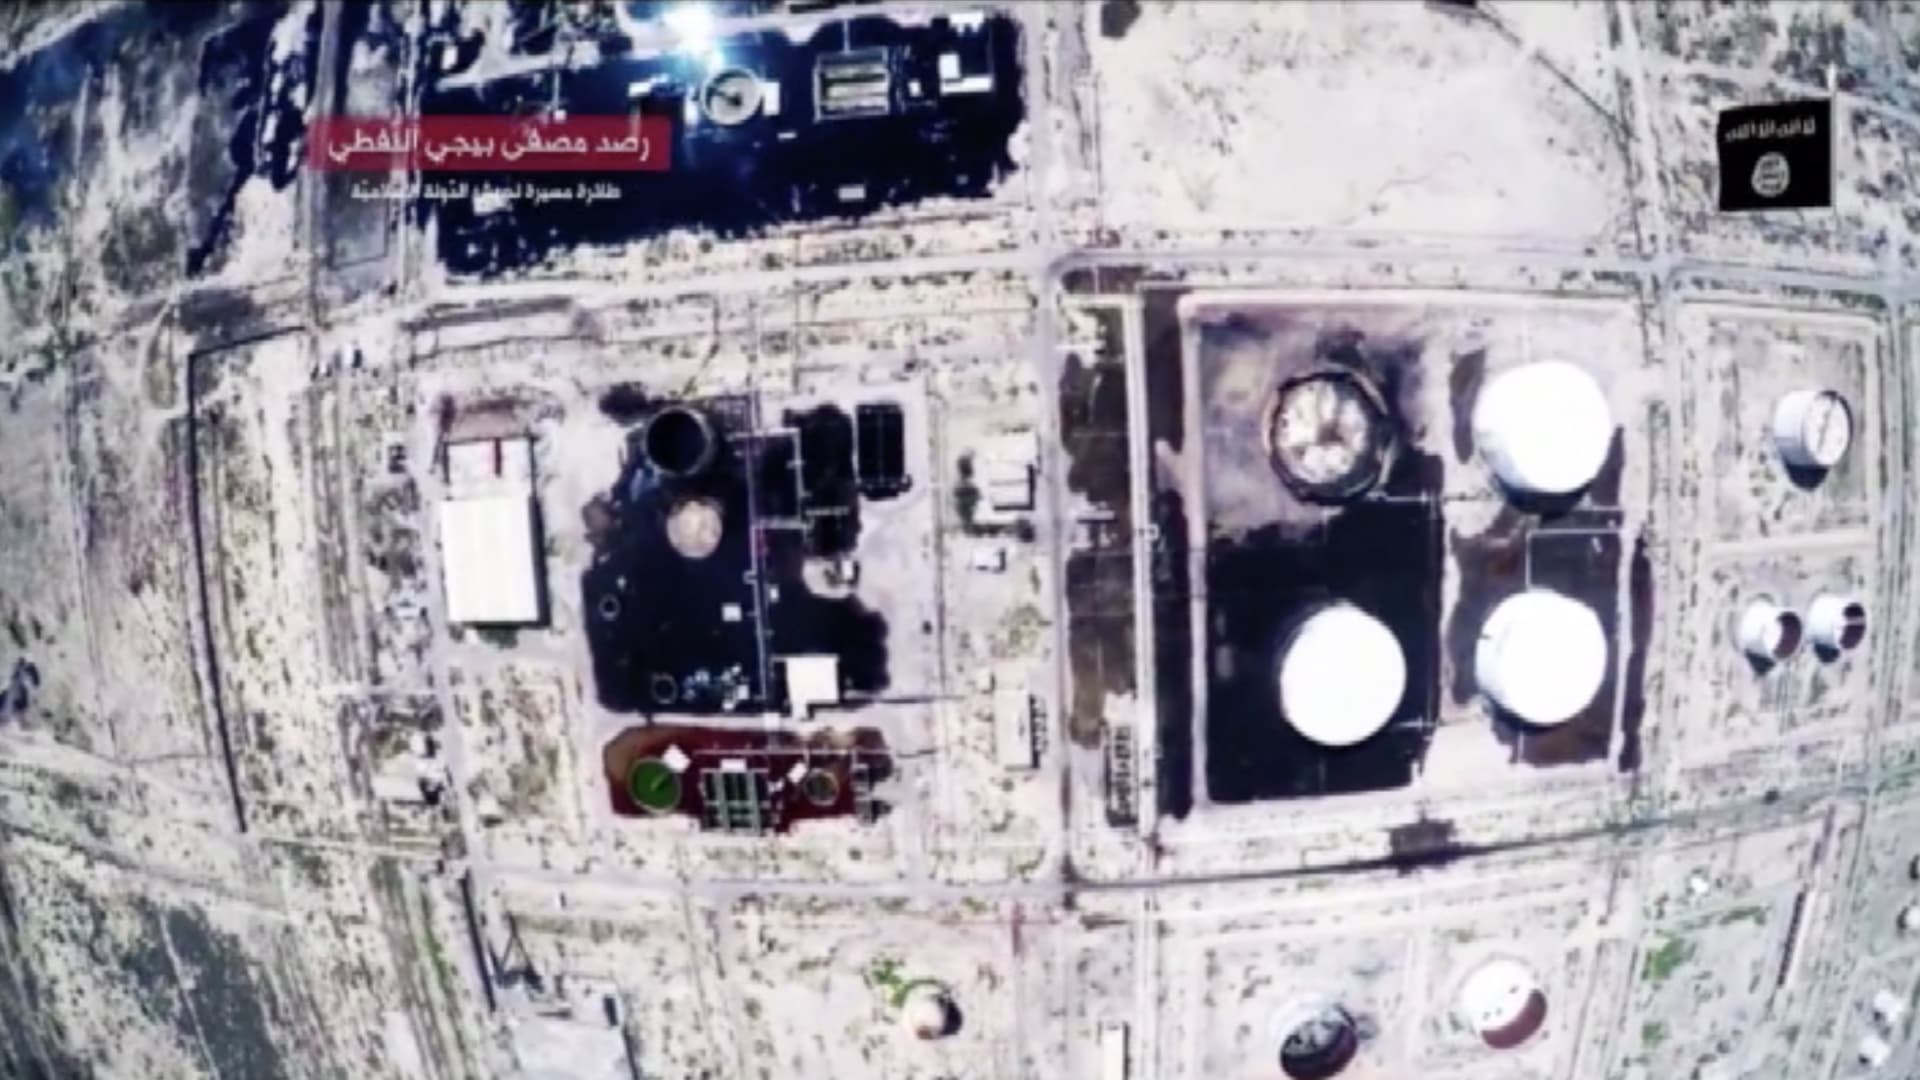  "داعش" يصدر فيديو دعائيا يظهر مقاتليه داخل مصفاة بيجي النفطية